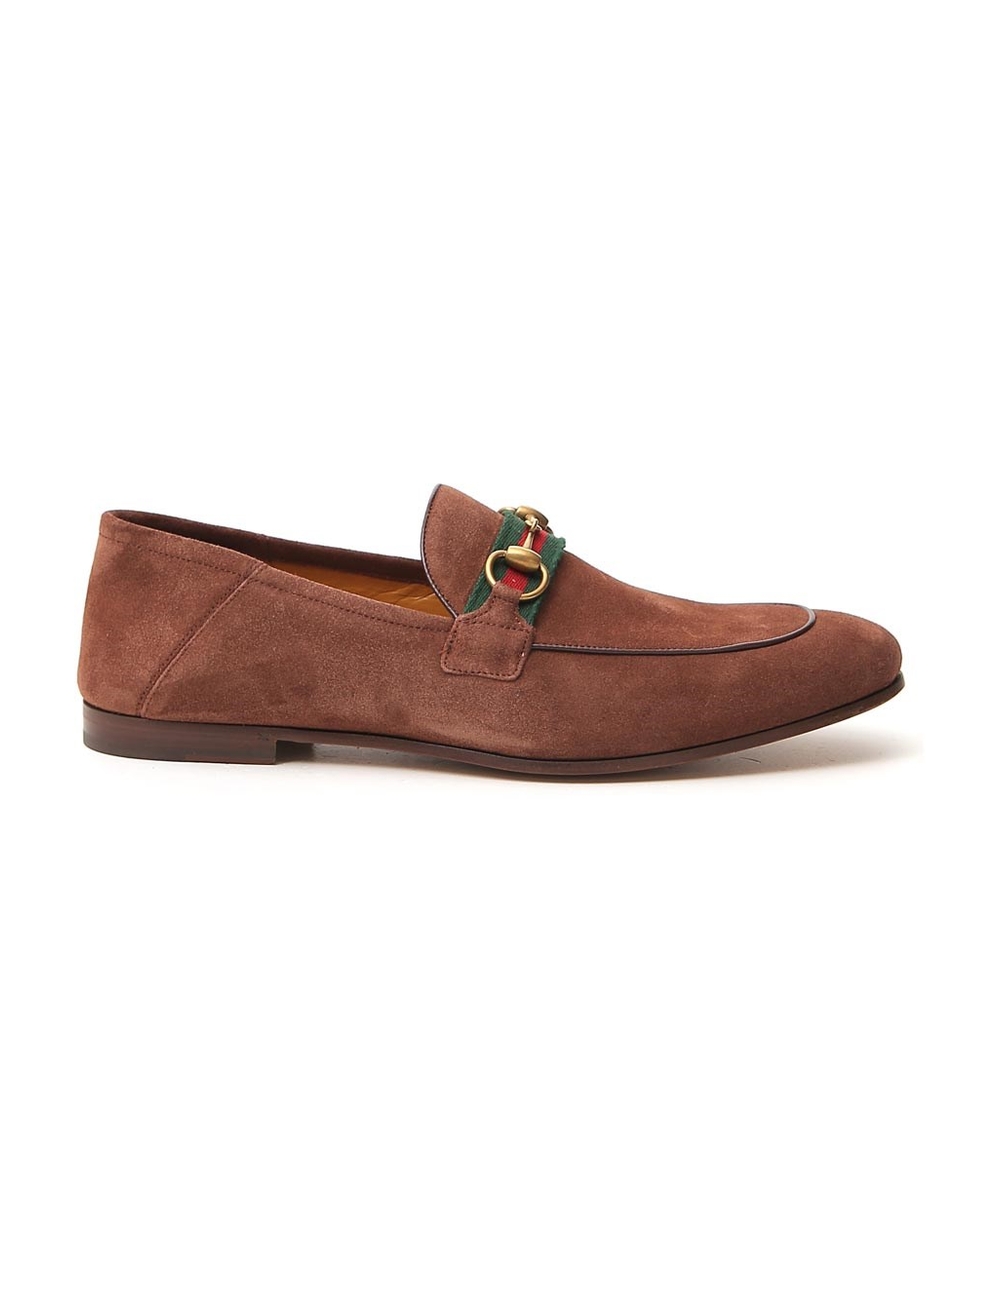 賽季：SS2020 顏色：棕色 意大利製造 分類：鞋 子類別：便鞋 麂皮絨：100％ 皮革鞋底：真